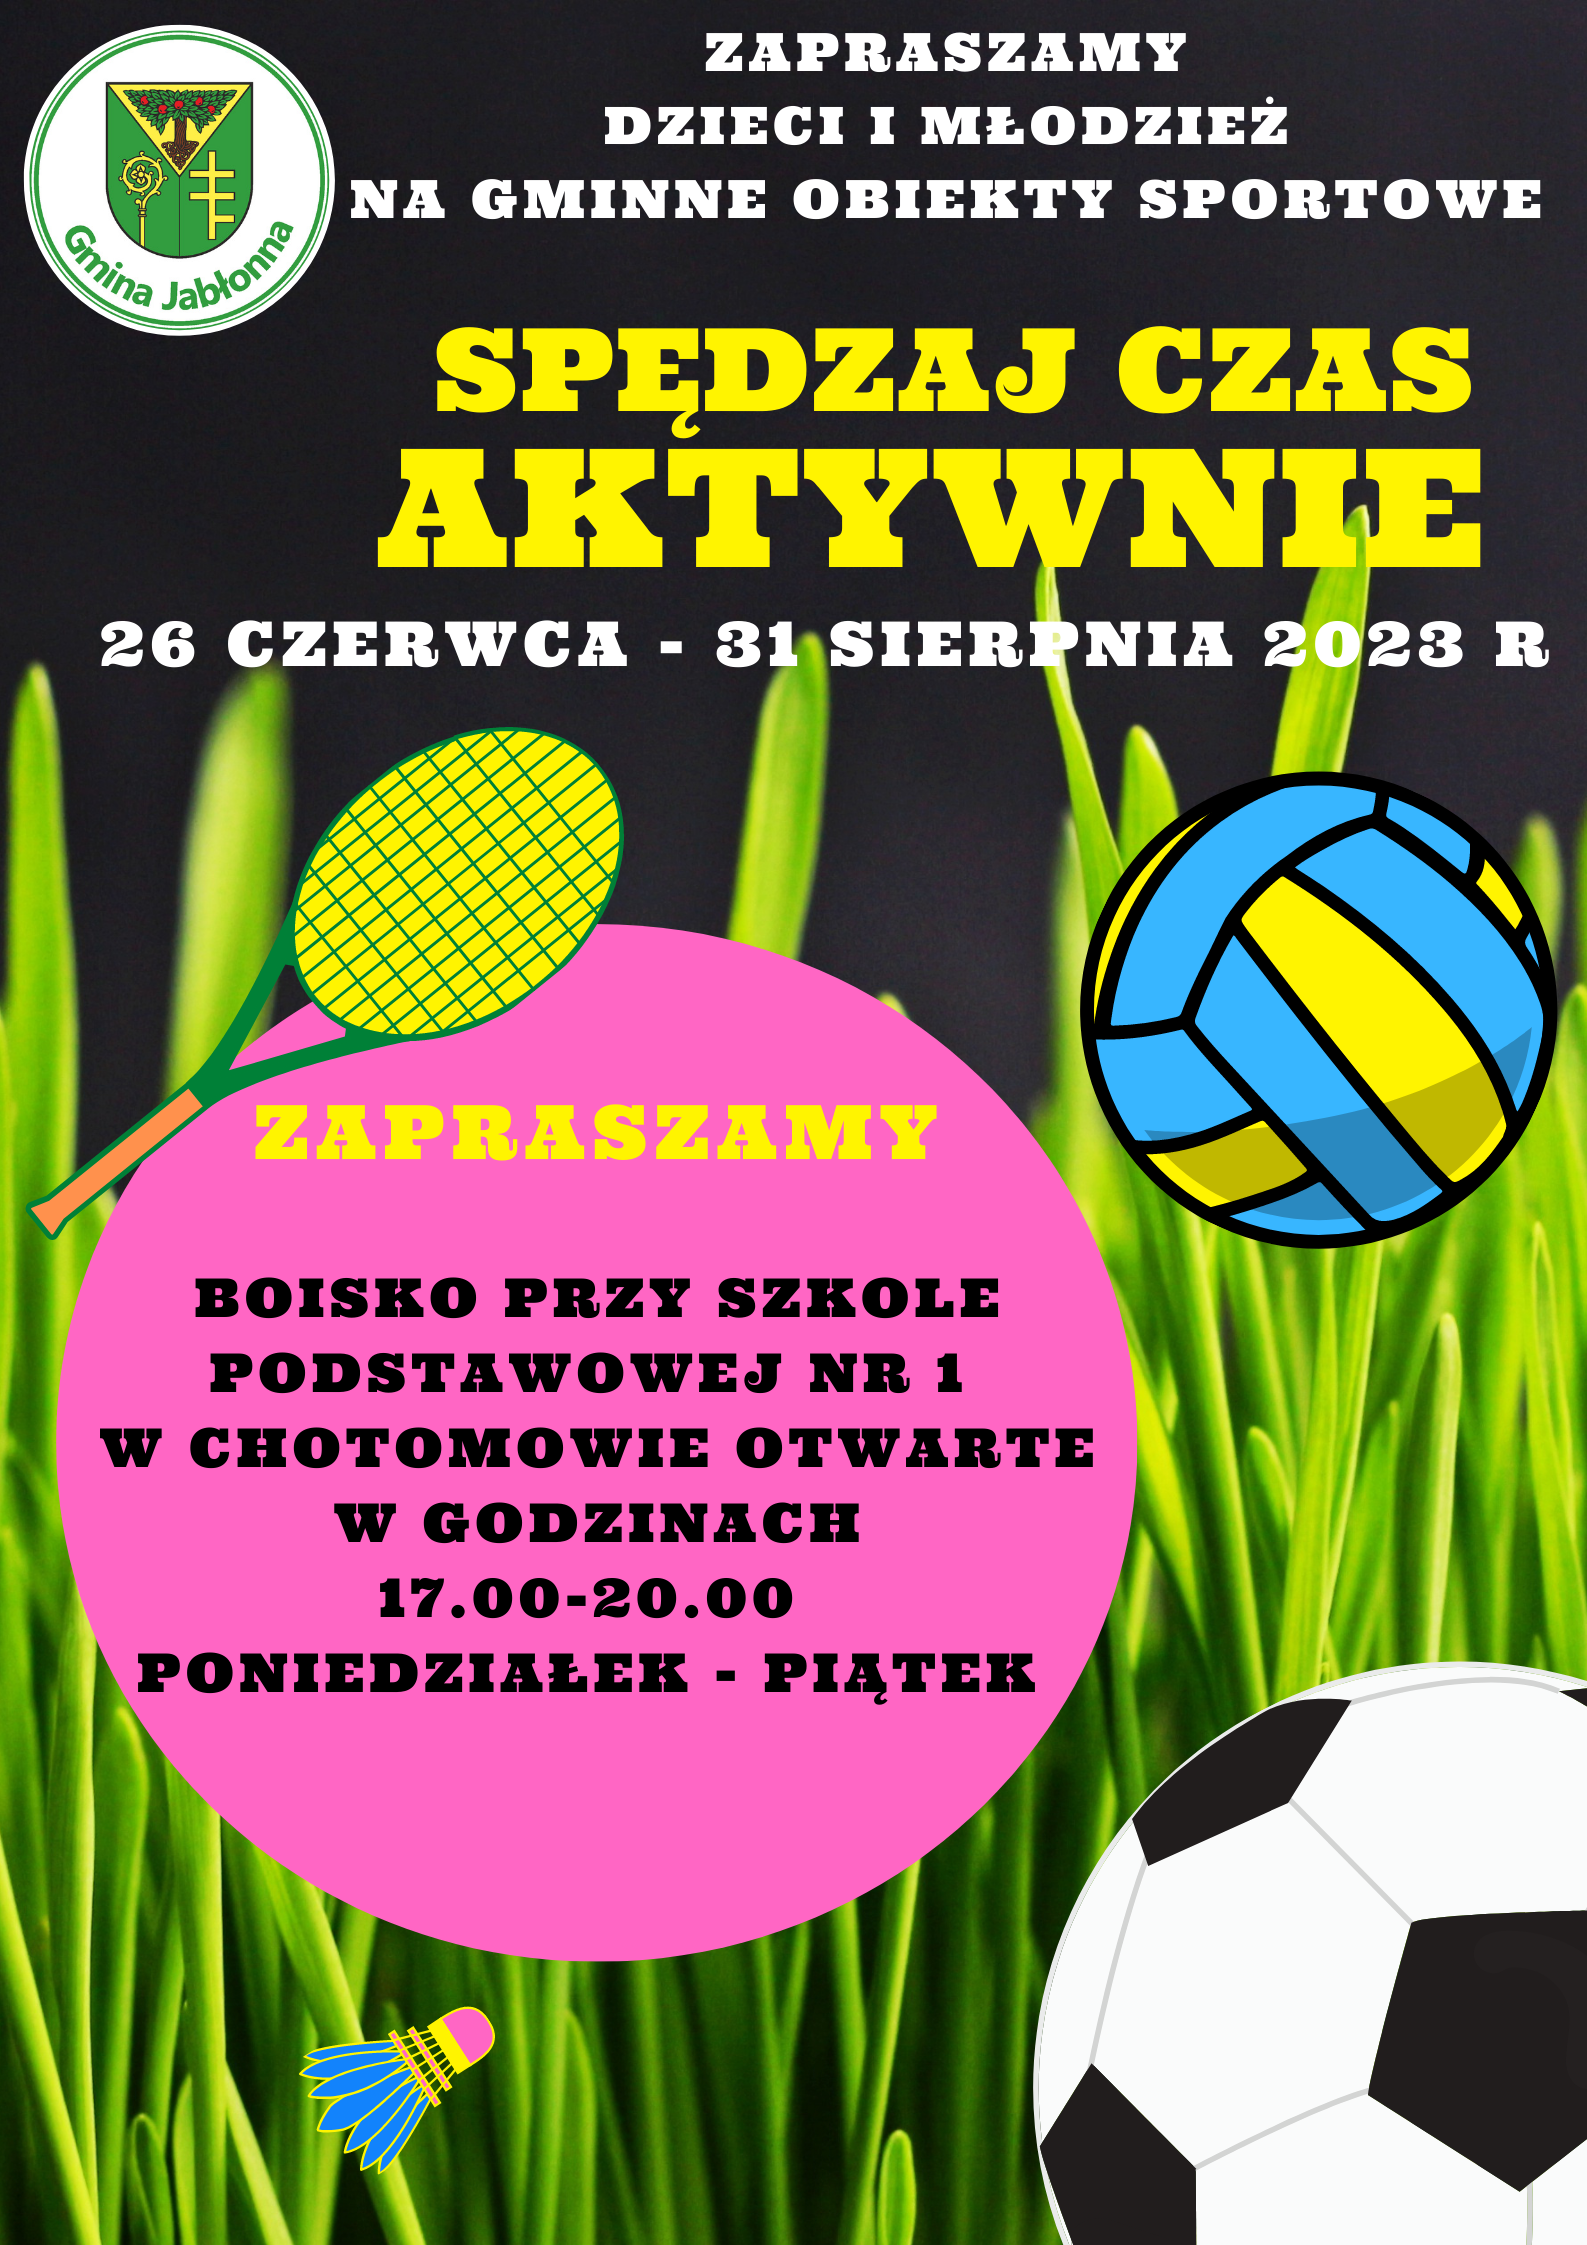 Plakat informujący o możliwości korzystania z gminnych obiektów sportowych w okresie 26 czerwca - 31 sierpnia 2023 roku